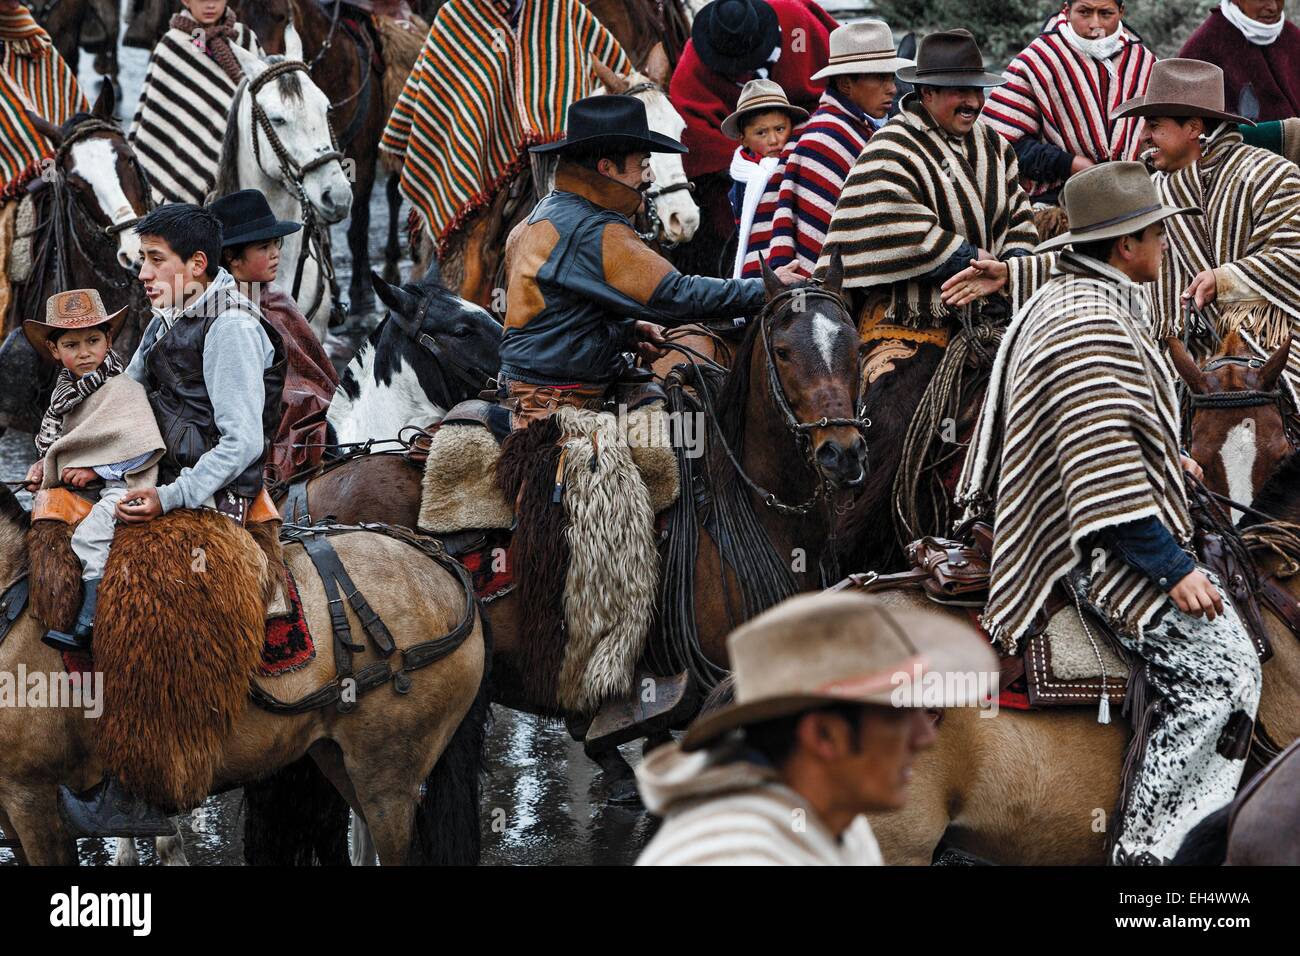 L'Équateur, Quito, Pelileo, concentration de cavaliers en poncho traditionnel au cours d'une célébration festive locale Banque D'Images